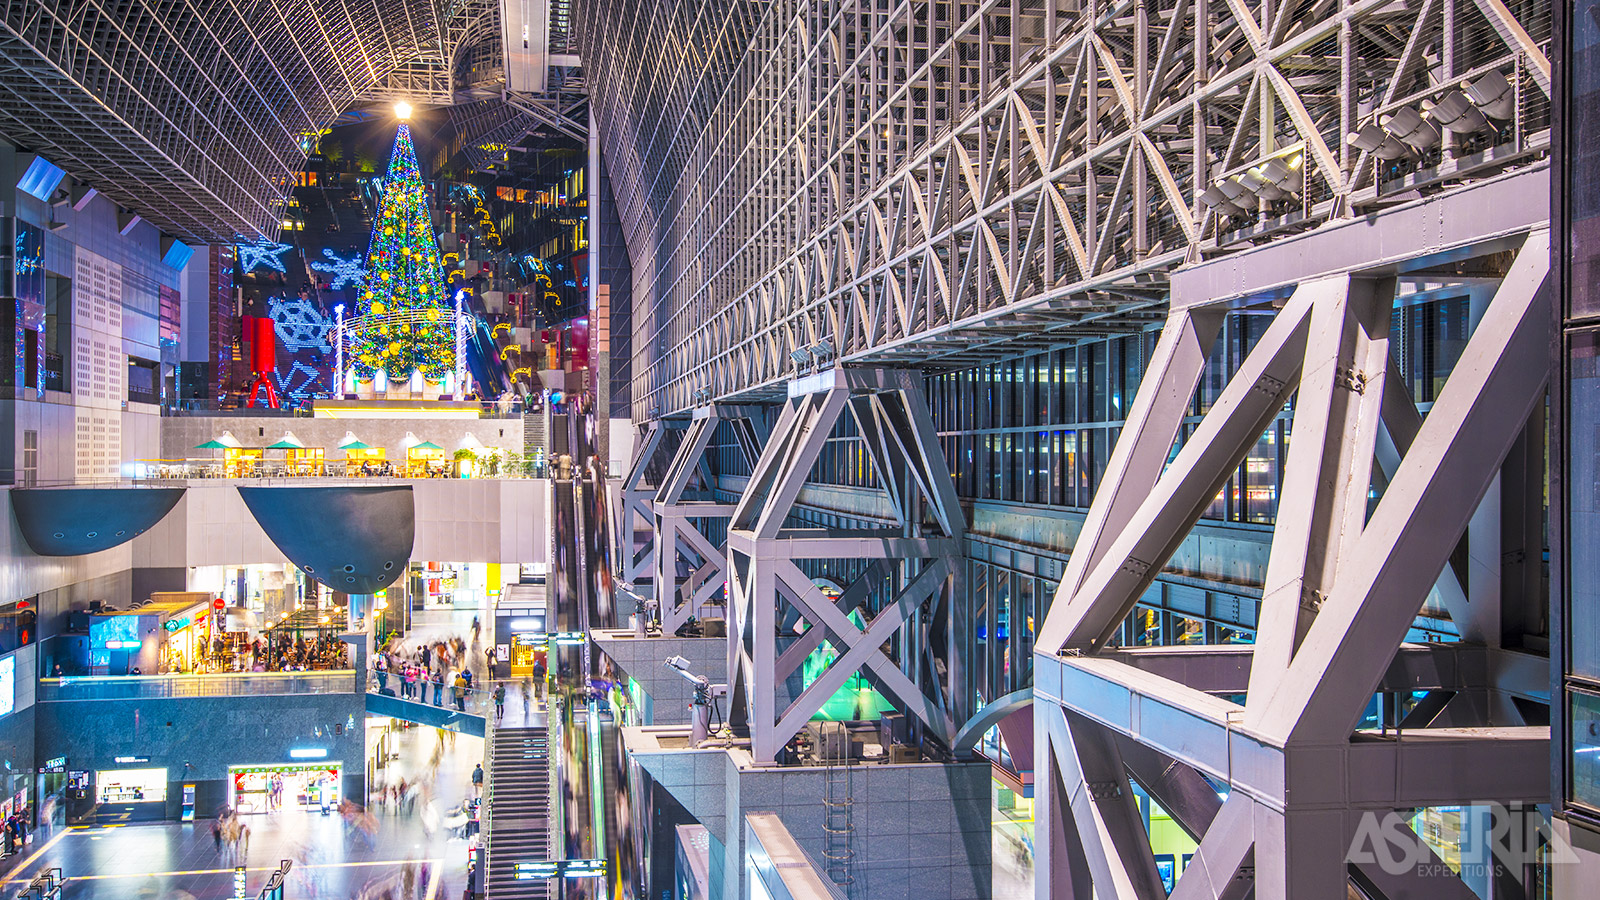 Het futuristisch ogende treinstation van Kyoto omvat ook een hotel, warenhuis, bioscoop, restaurants & winkelcentra